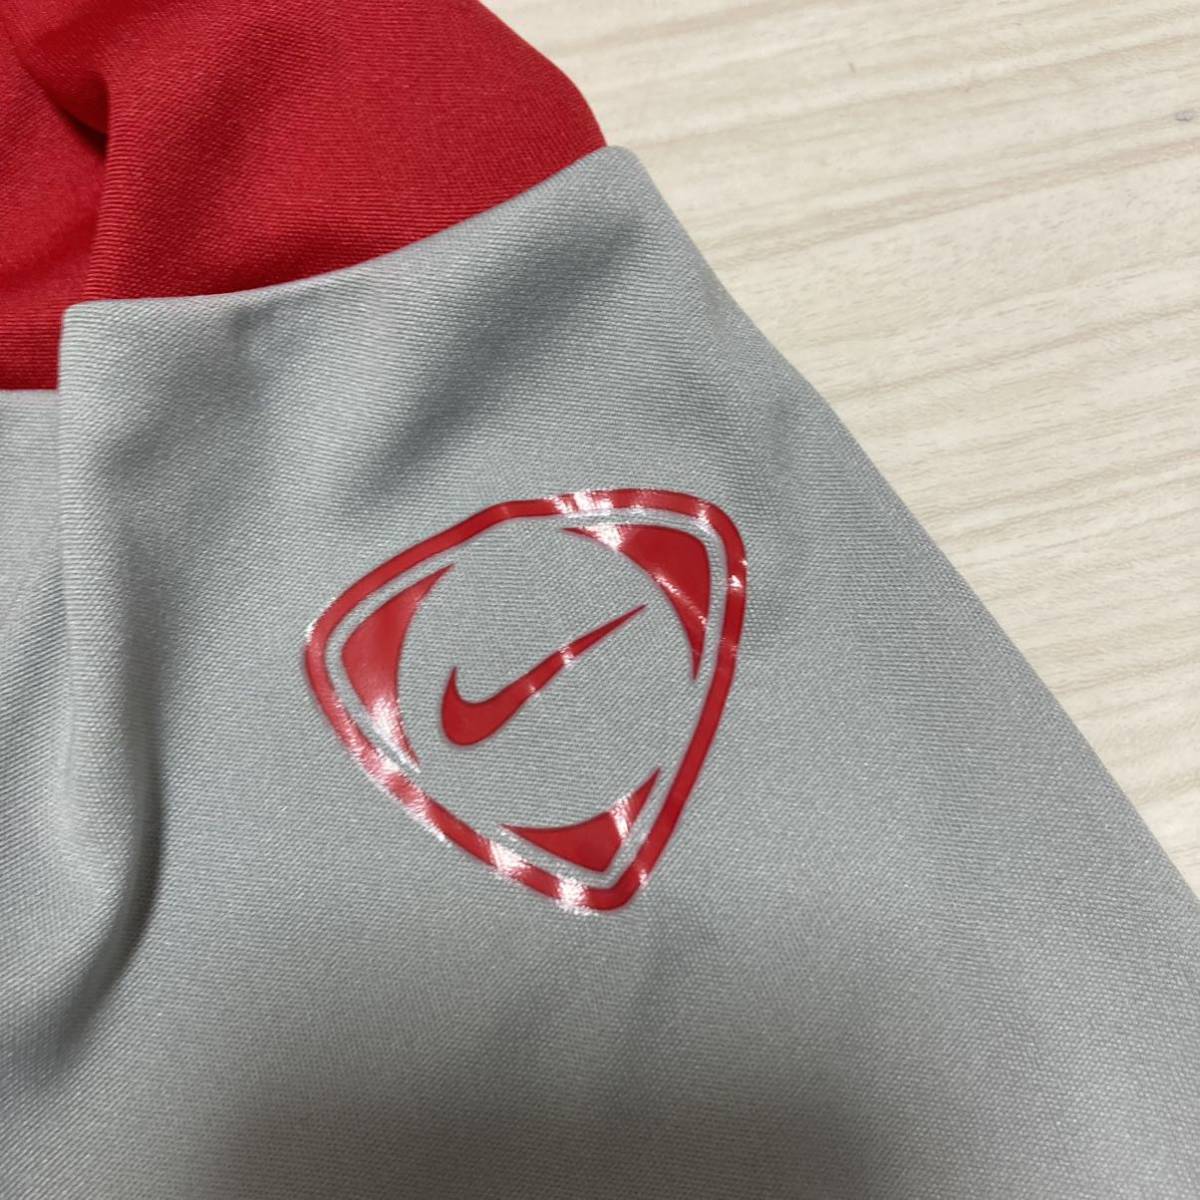 美品 09/10モデル■NIKE ナイキ アーセナル■ユニフォーム ジャージ M 赤 レッド グレー Arsenal Training Shirt オフィシャル